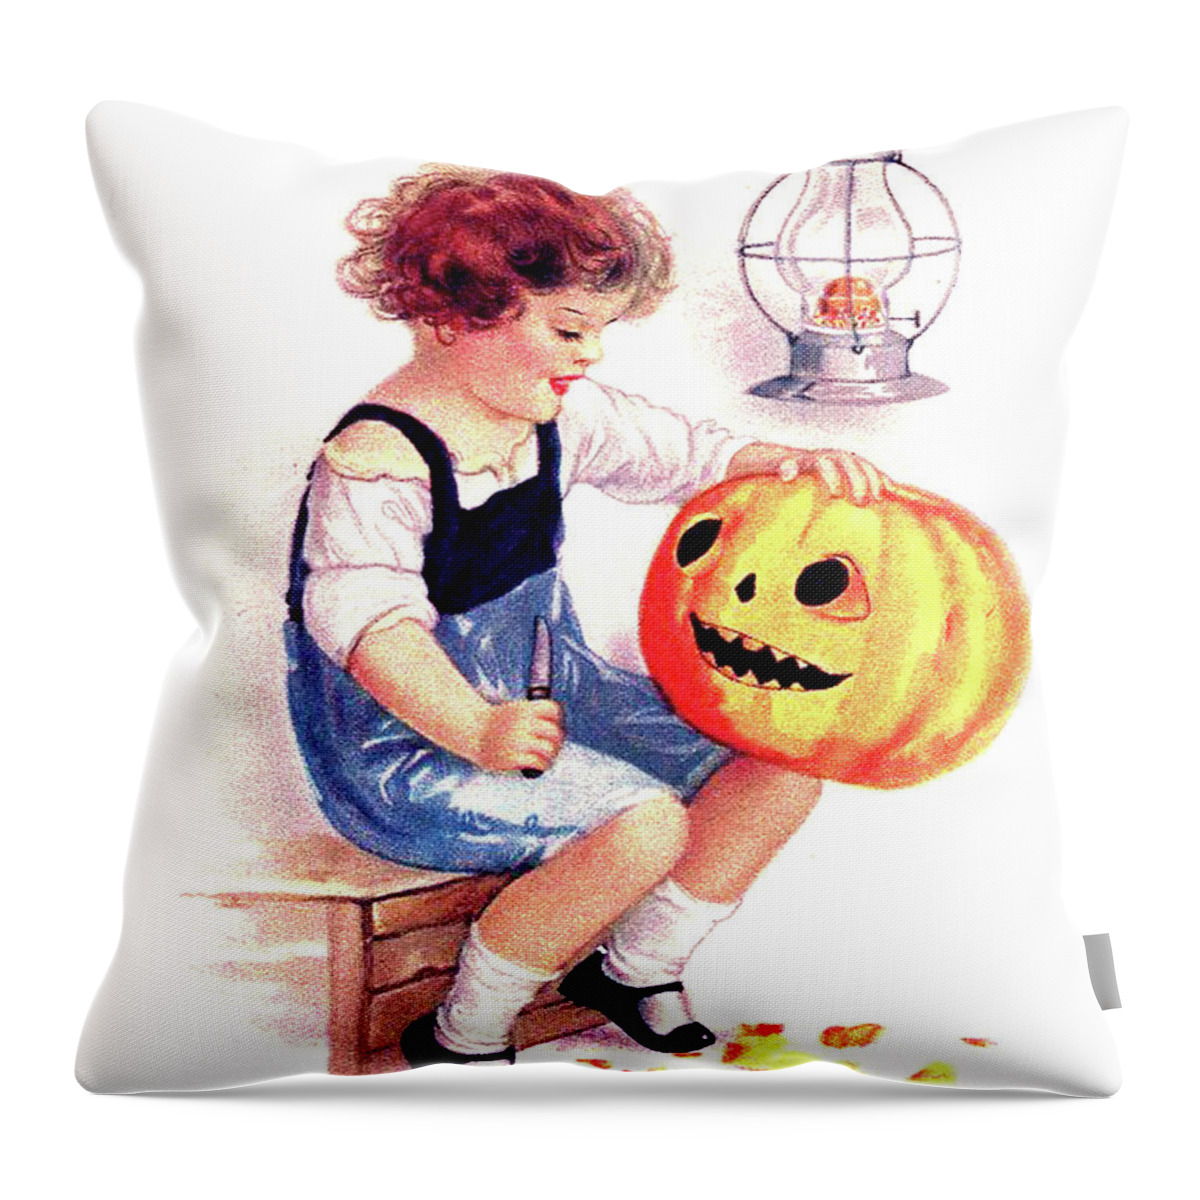 Little Girl Throw Pillow featuring the digital art Little Girl Carving Pumpkin by Long Shot